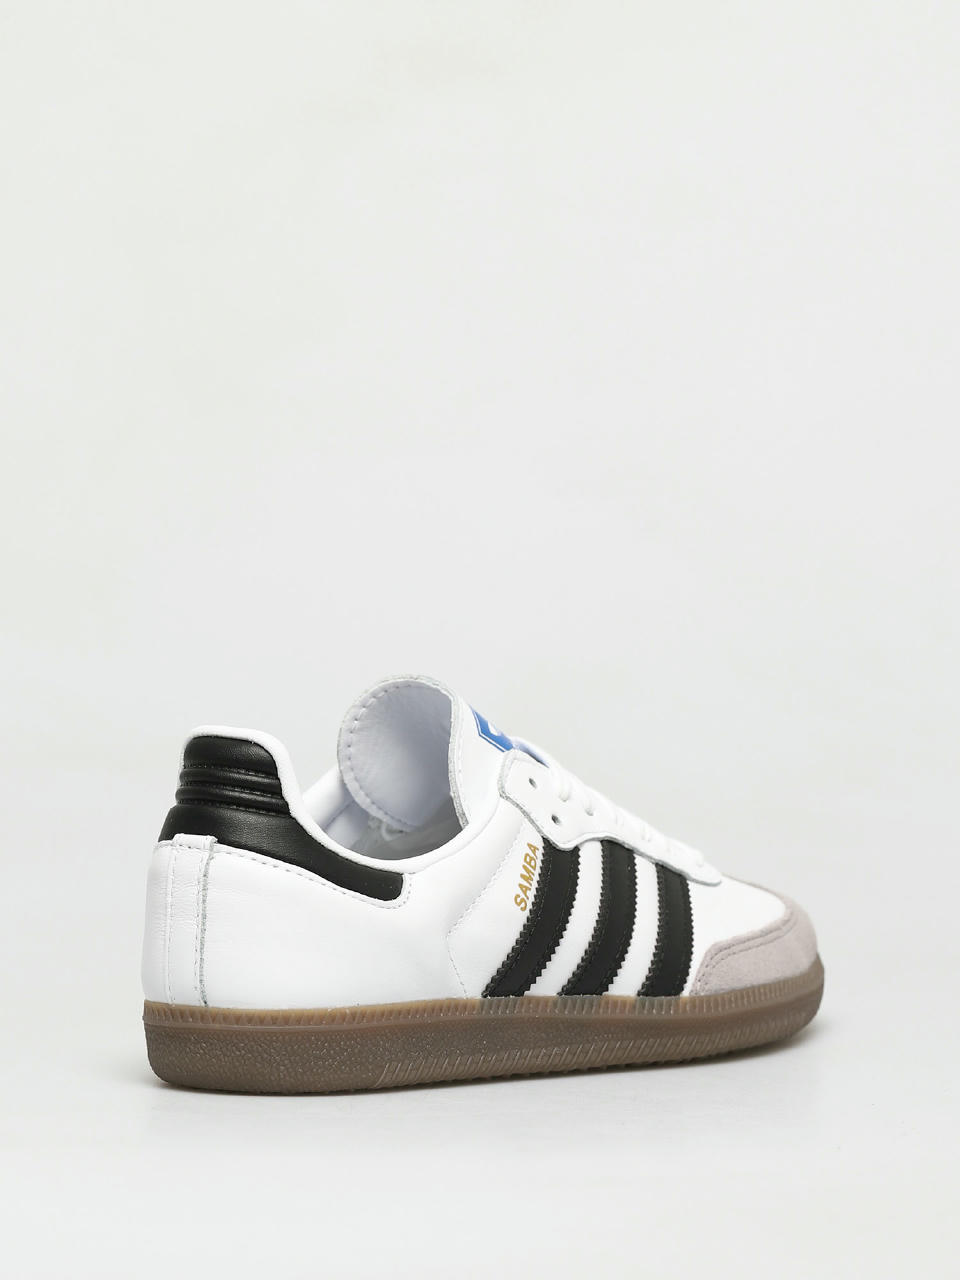 Men's shoes adidas Samba Og Ftw White/ Core Black/ Cgrani